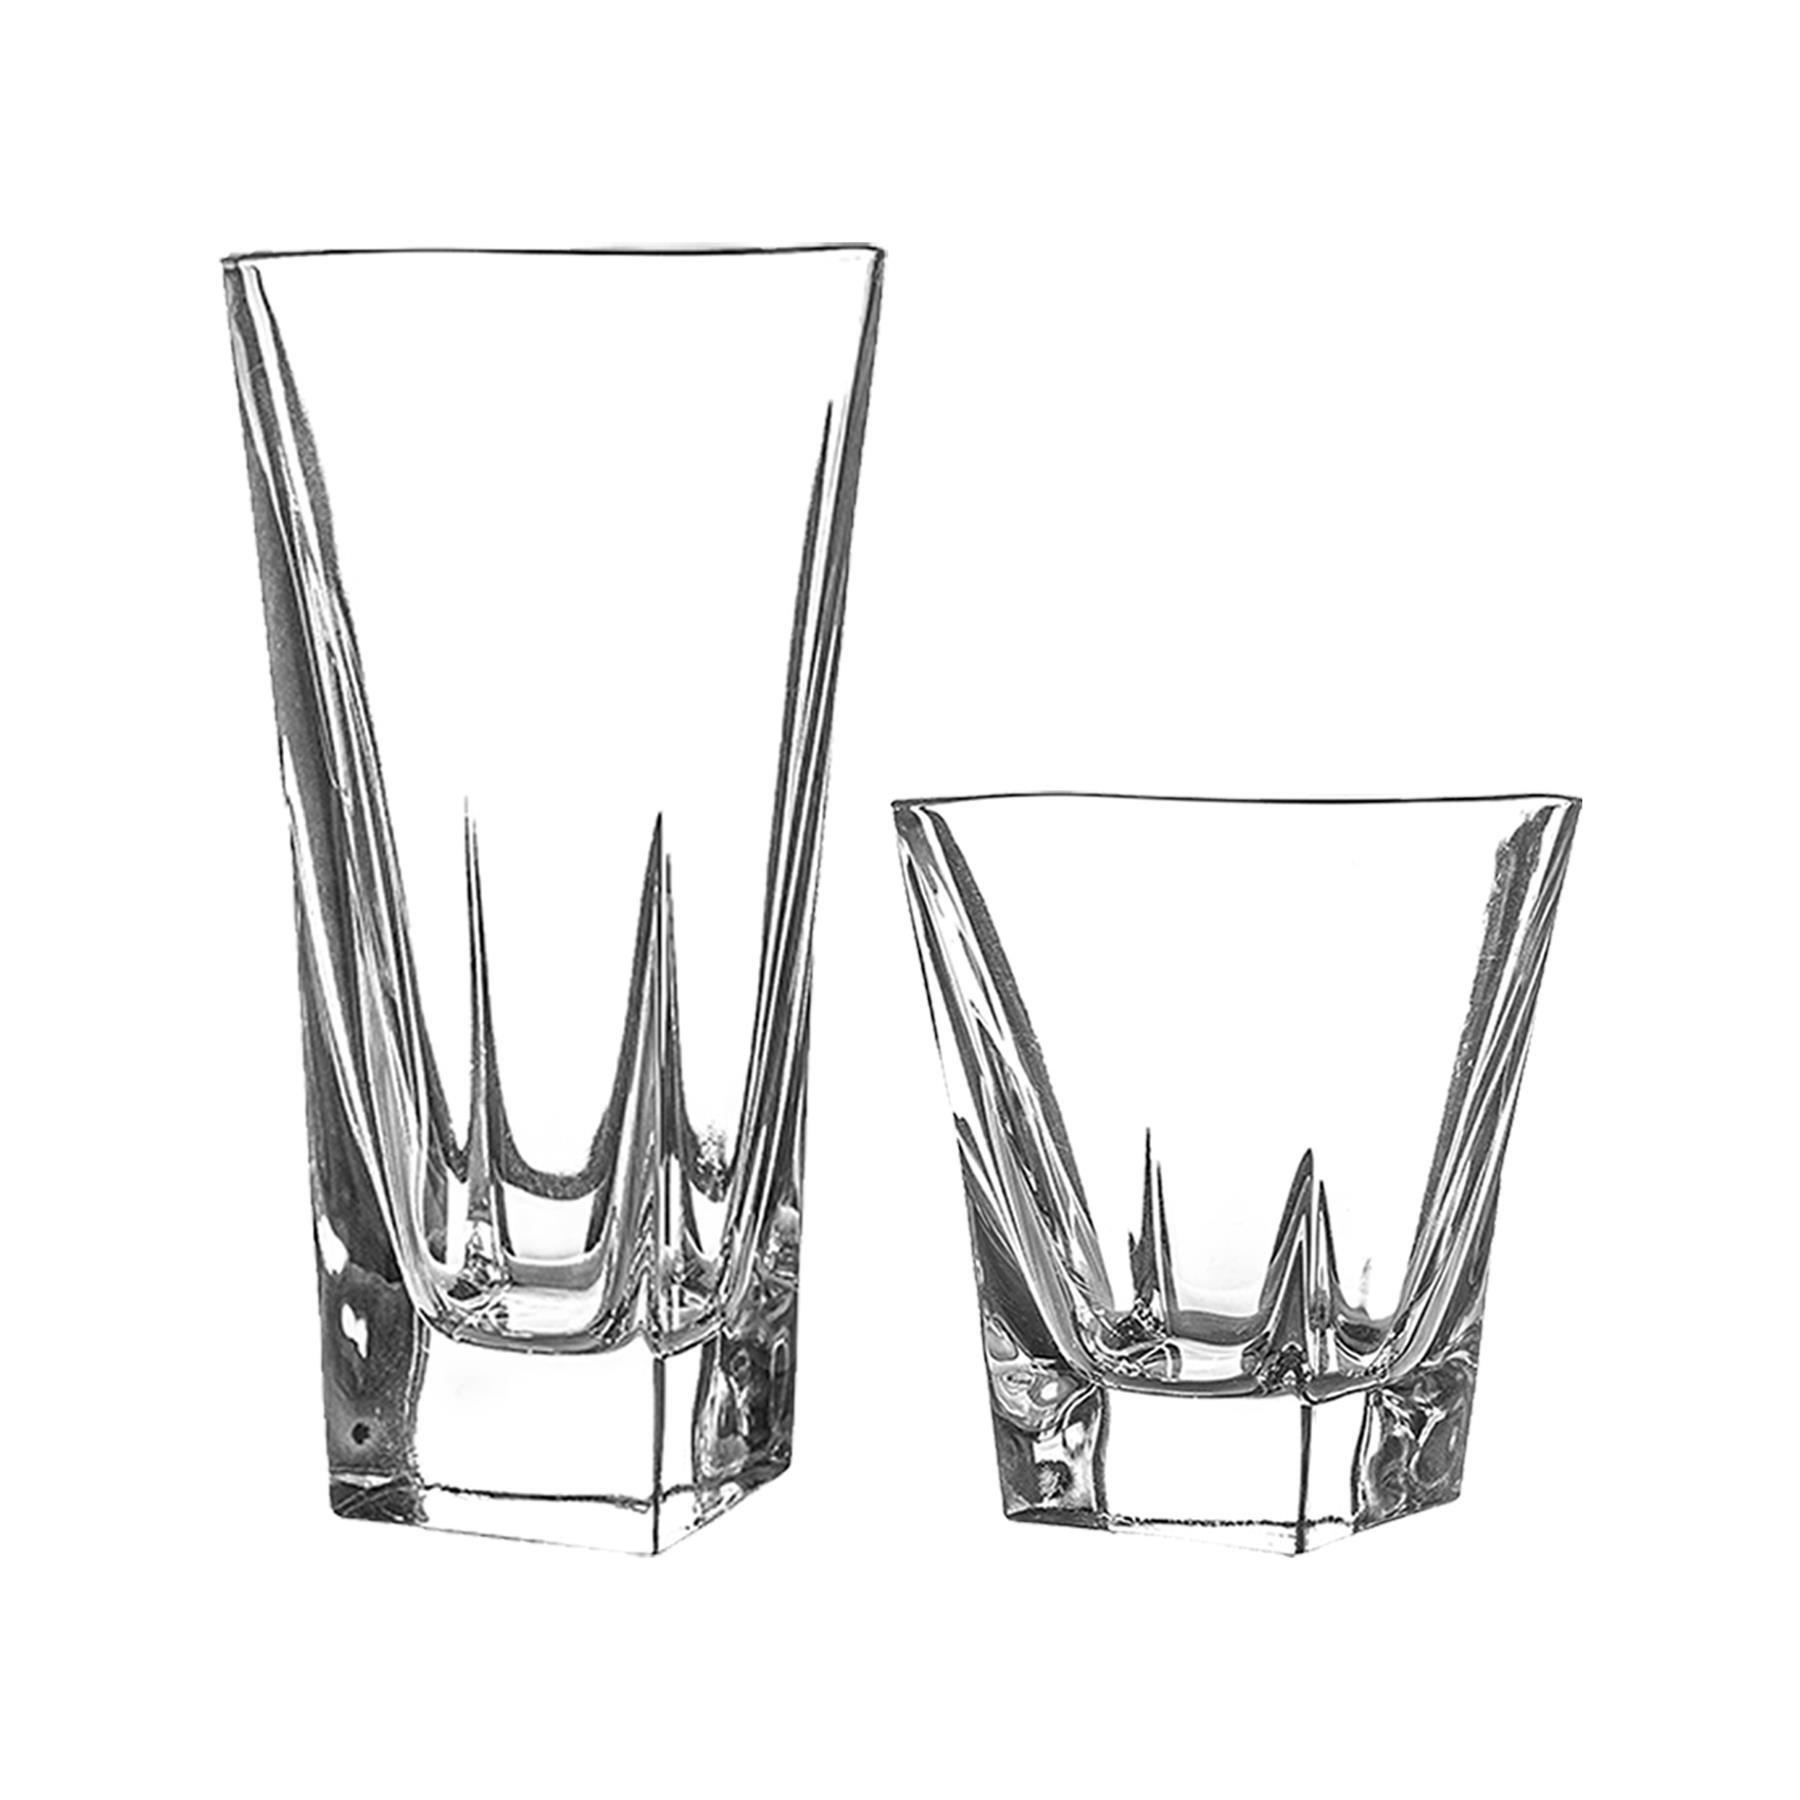 RCR Crystal 12 Piece Fusion Glassware Set